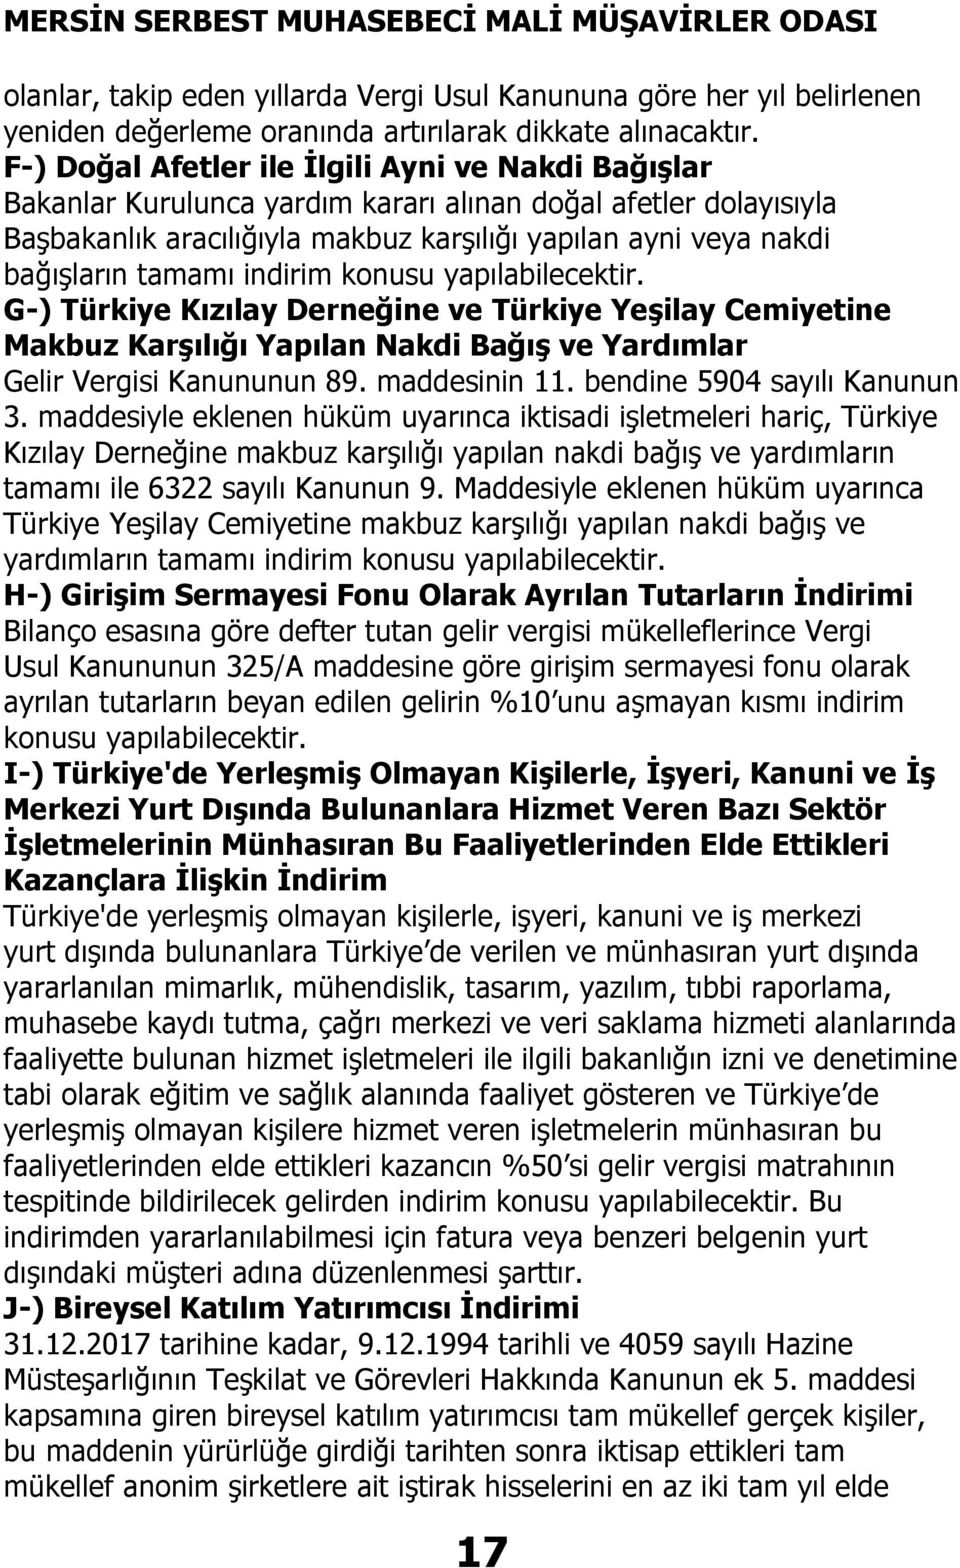 tamamı indirim konusu yapılabilecektir. G-) Türkiye Kızılay Derneğine ve Türkiye Yeşilay Cemiyetine Makbuz Karşılığı Yapılan Nakdi Bağış ve Yardımlar Gelir Vergisi Kanununun 89. maddesinin 11.